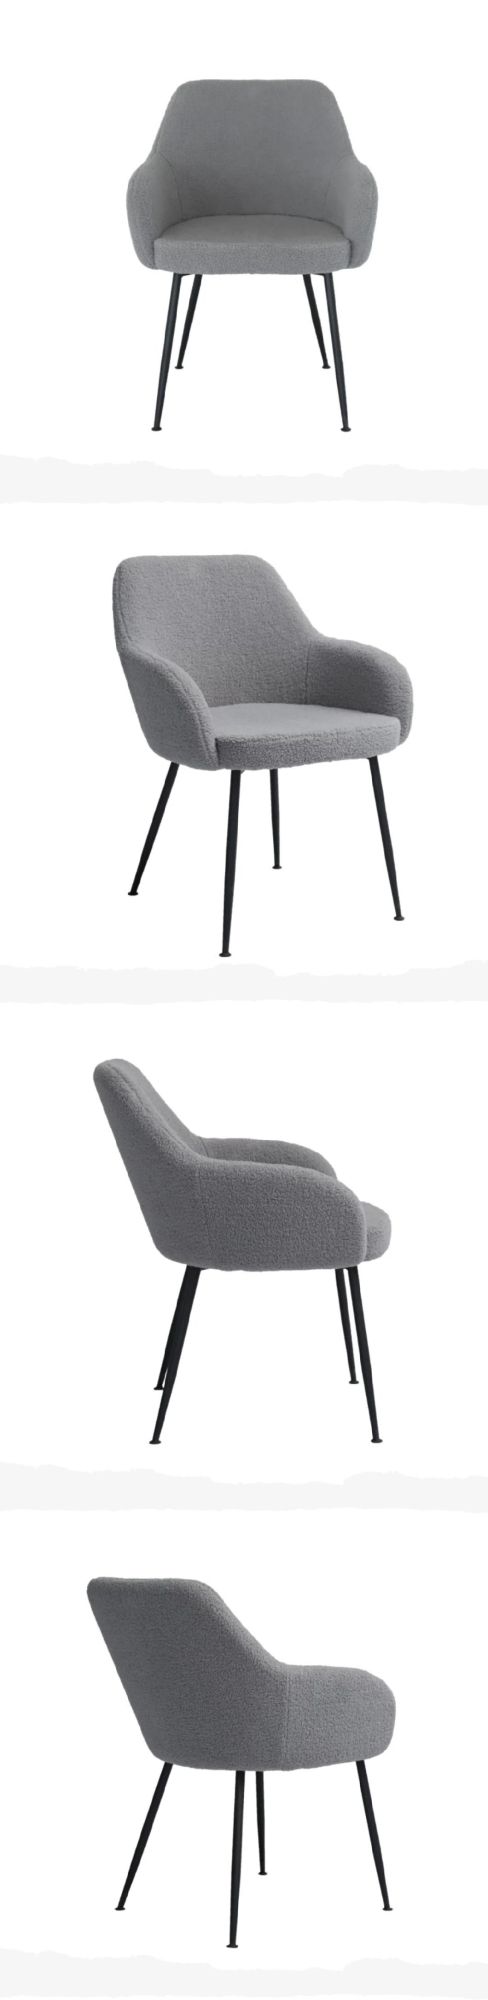 Modern Custom Armchair Living Room Chair Velvet Comfortable plastic Dining Chair